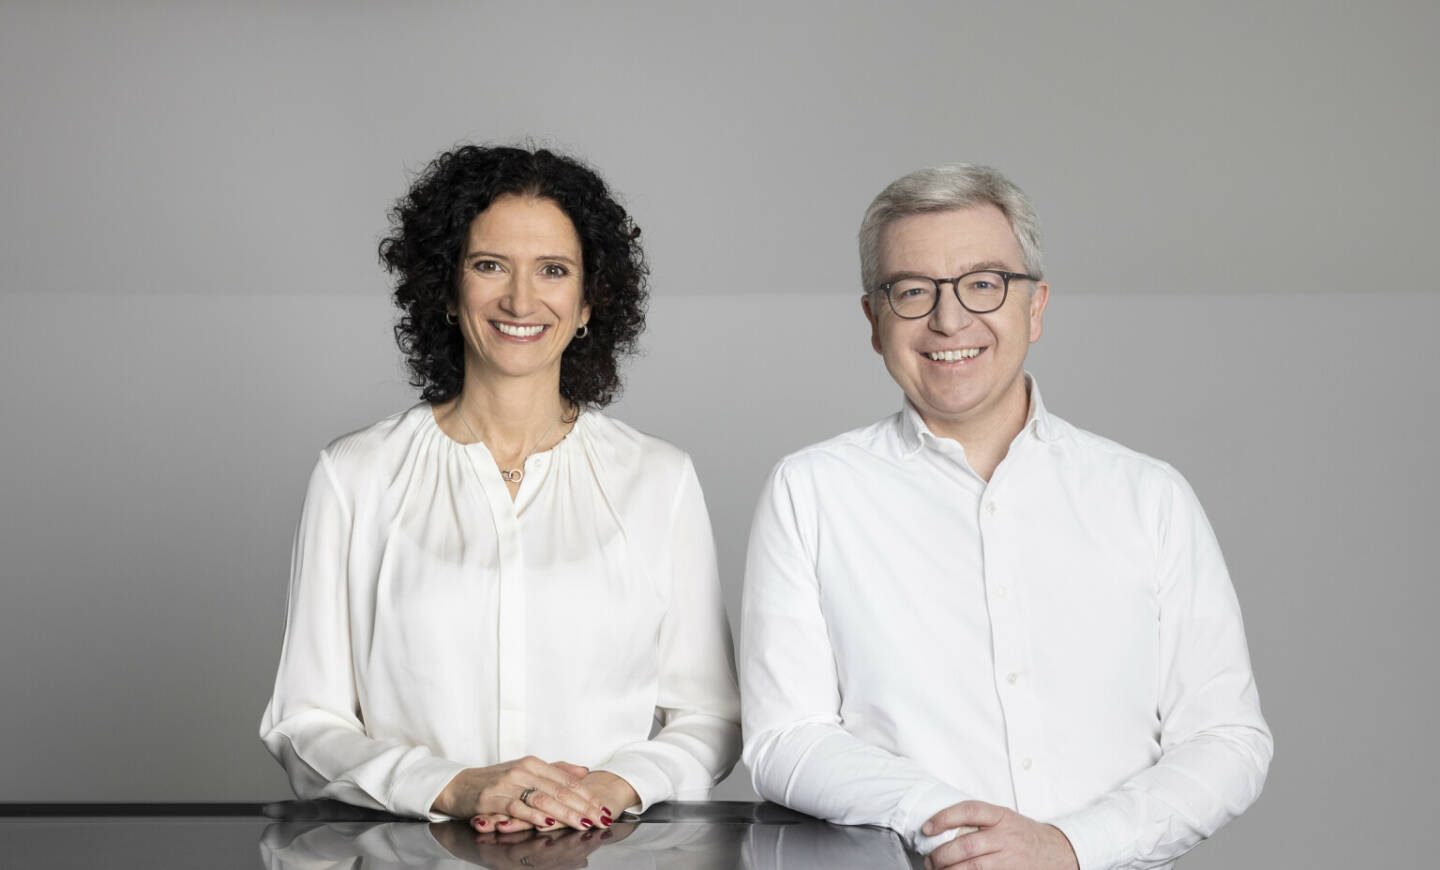 Die neue Geschäftsleitung der Raiffeisen-Holding NÖ-Wien (v.l.n.r.): Claudia Süssenbacher (Geschäftsleiterin) und Michael Höllerer (Generaldirektor). Fotocredit:Eva Kelety